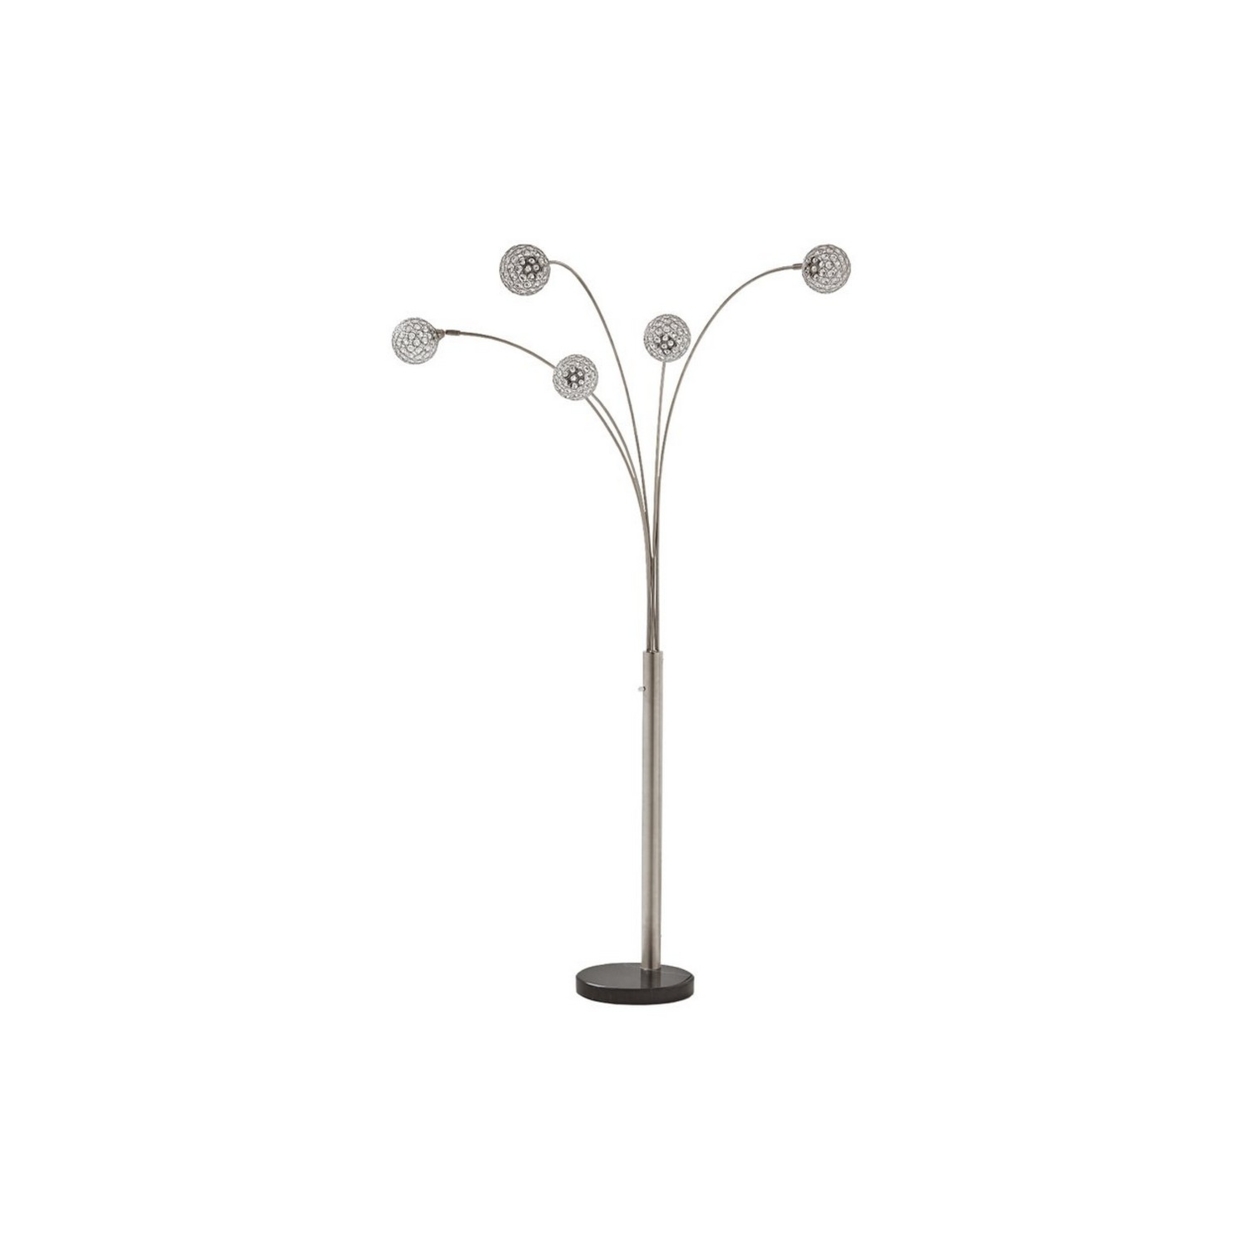 Contemporary Metal Arc Acrylic Bead Lamp With Circular Leg Base, Silver- Saltoro Sherpi